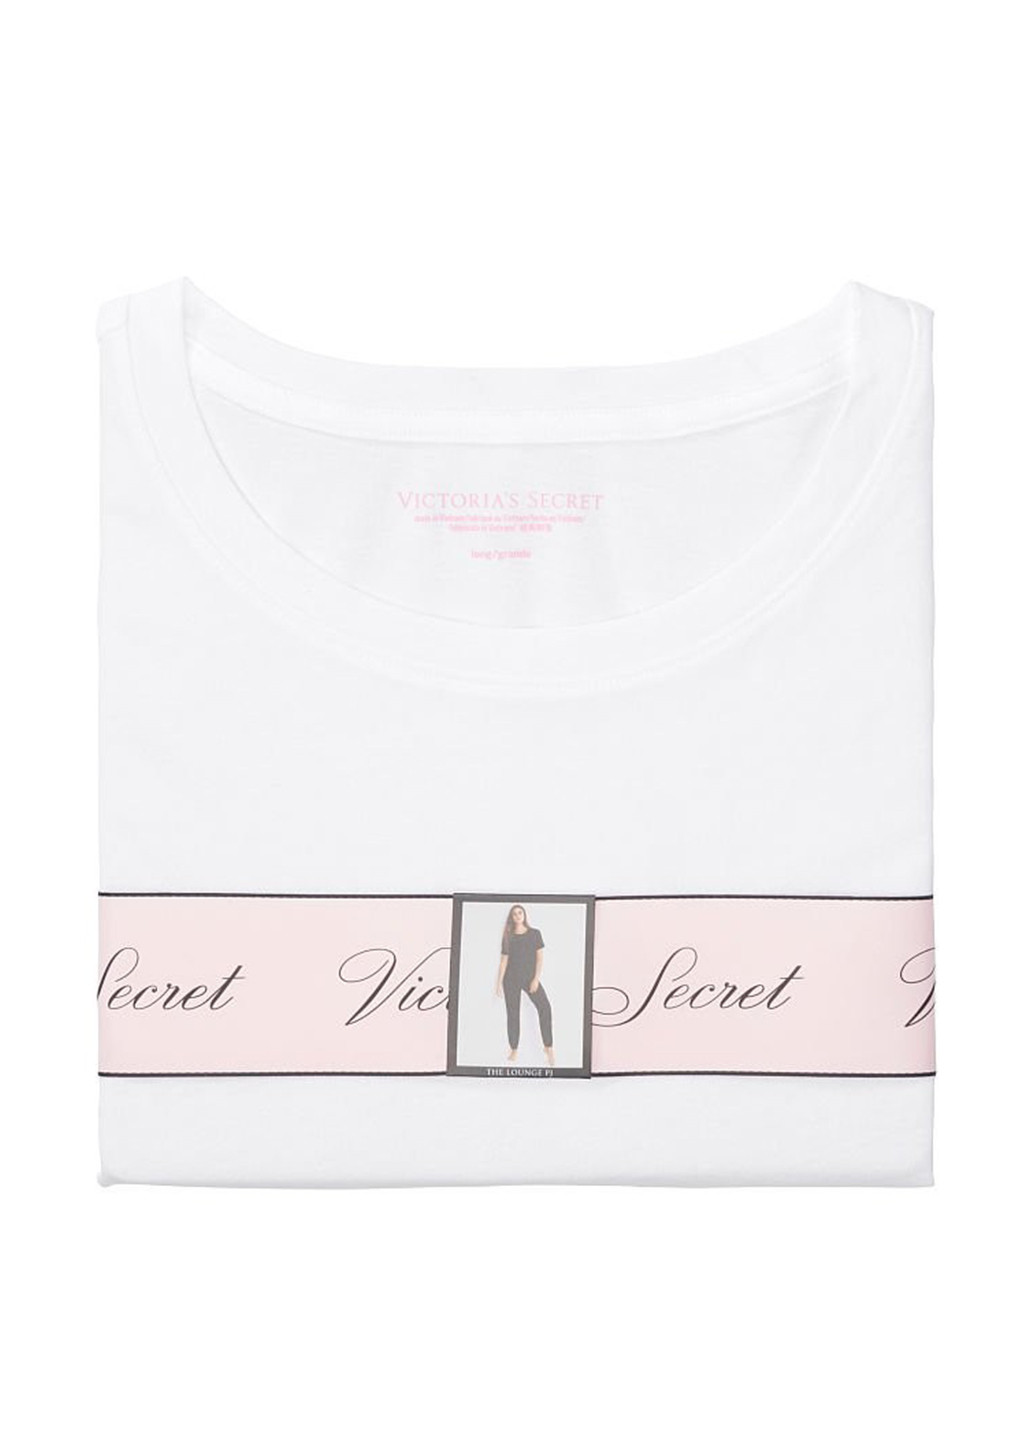 Комбинированная всесезон пижама (футболка, брюки) футболка + брюки Victoria's Secret